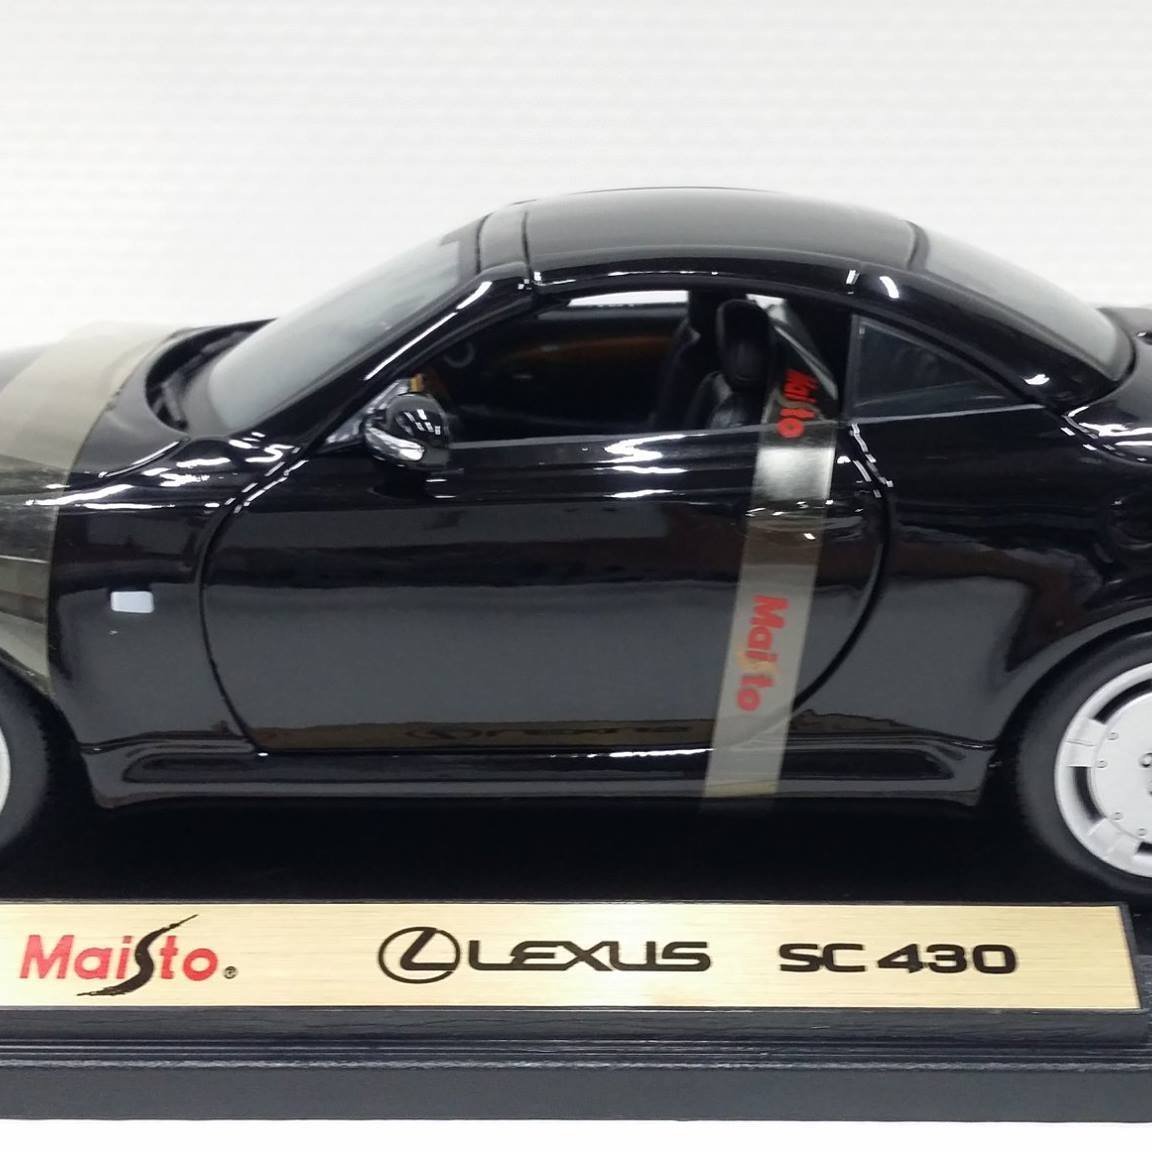 統一模型玩具店 Maista Lexus Sc430 黑色 1 18 Yahoo奇摩拍賣